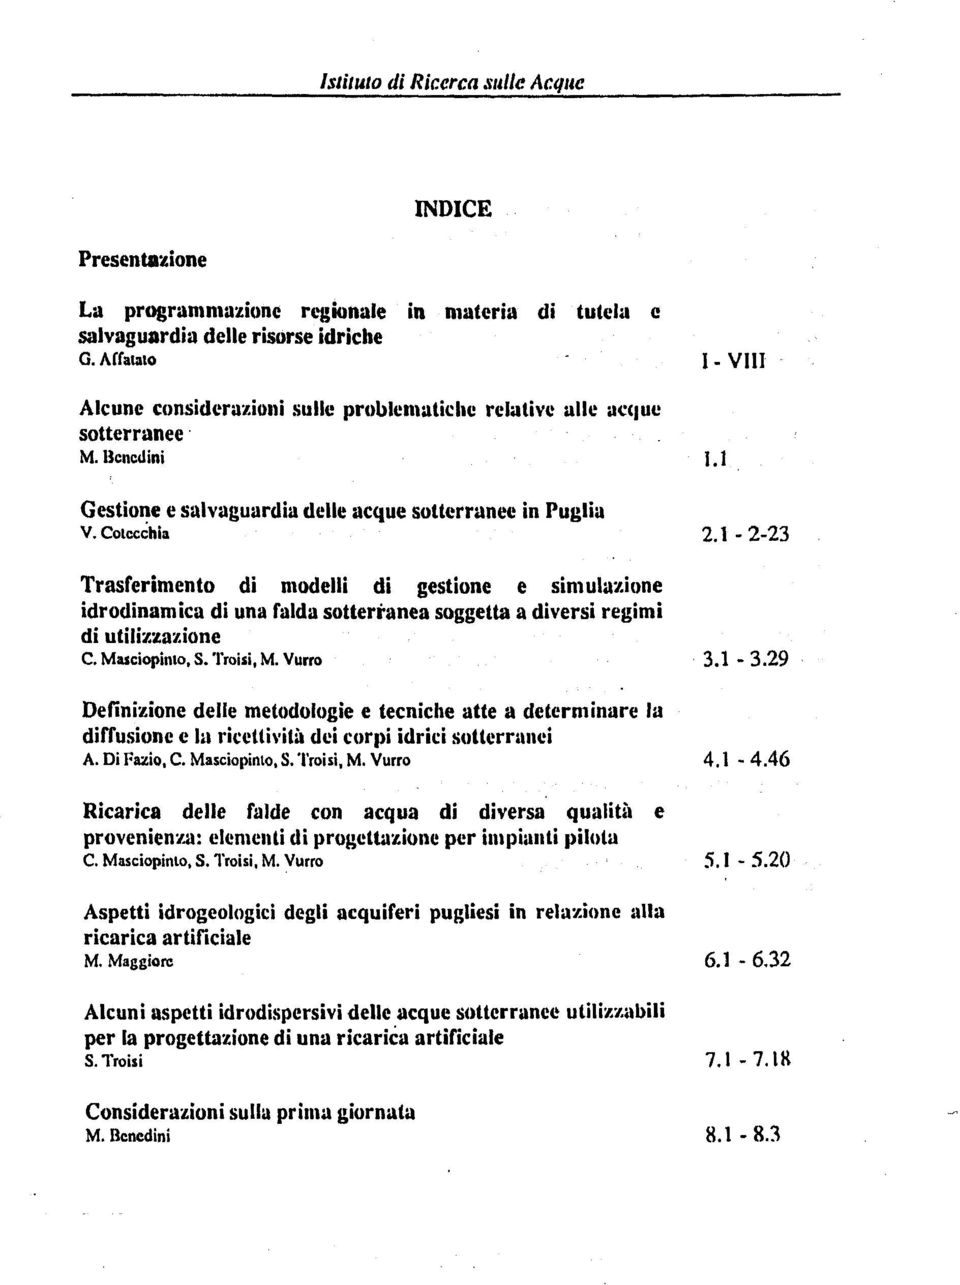 1223 Trasferimento di modelli di gestione e simulazione idrodinamica di una falda sotterranea soggetta a diversi regimi di utilizzazione C. Masciopinto,S. Troisi, M. Vurro 3.1 3.